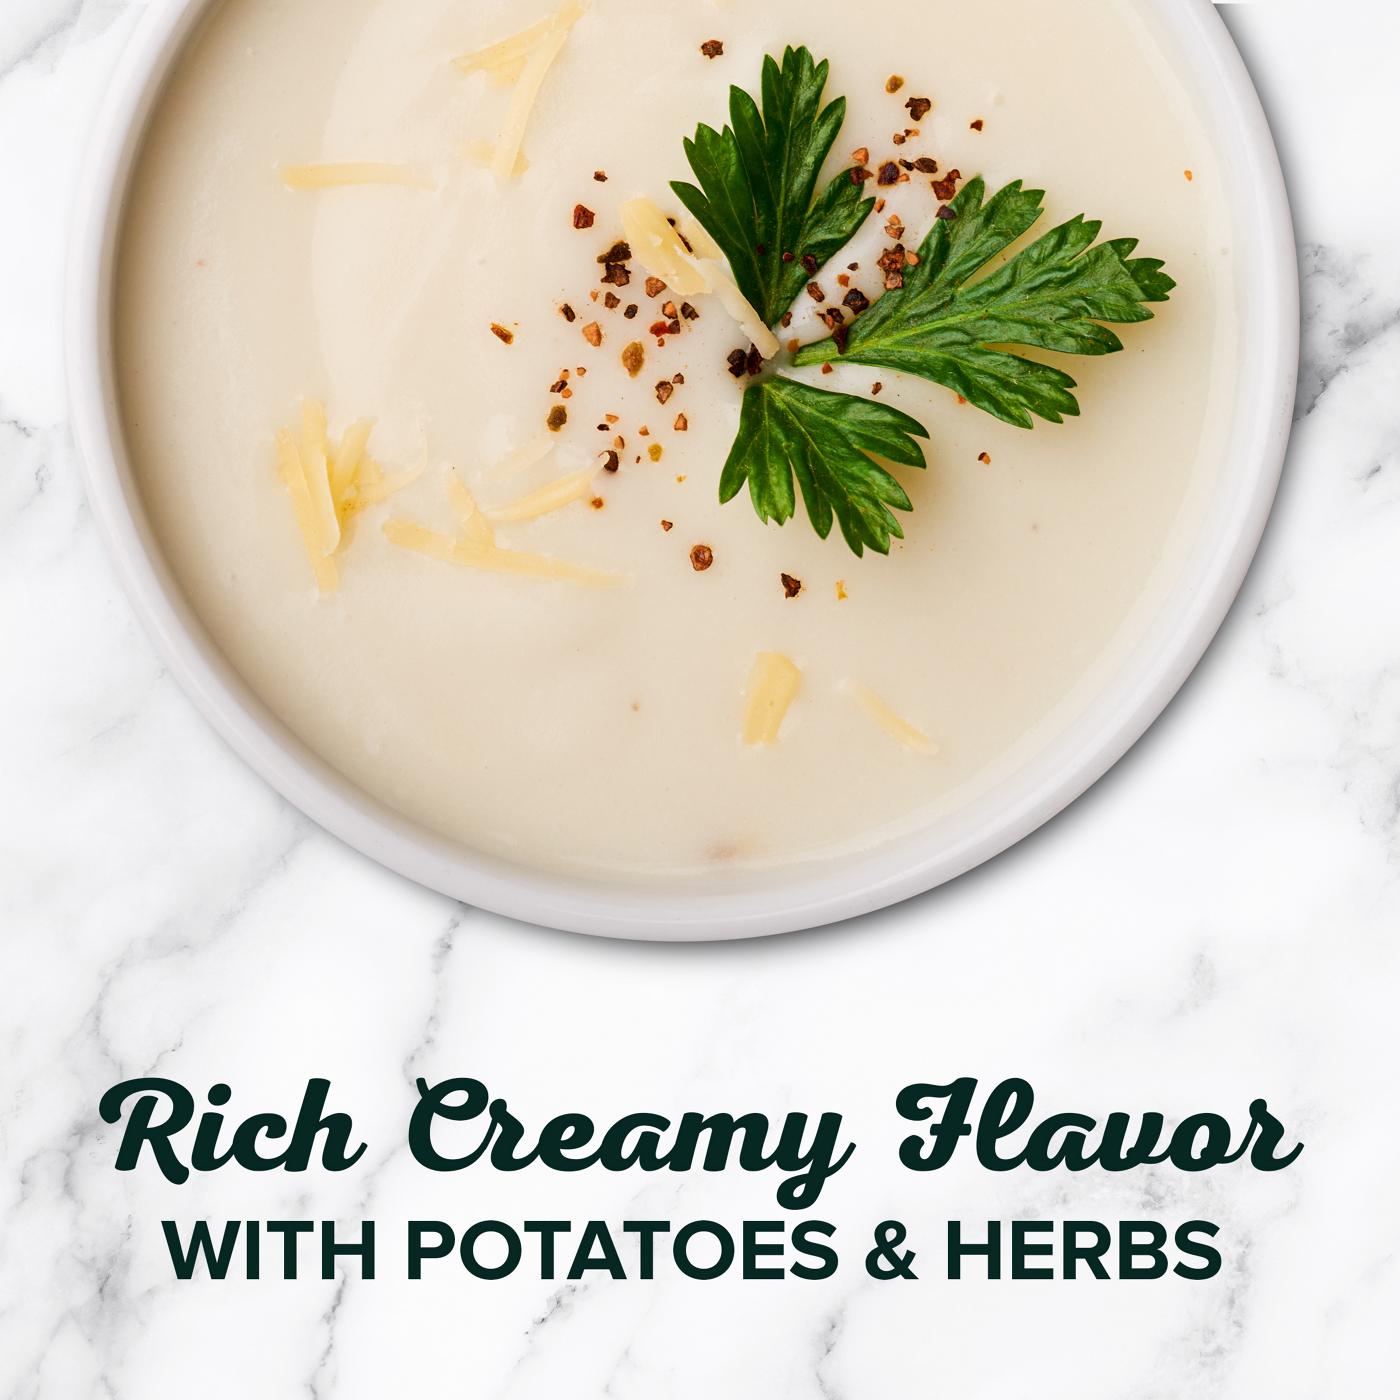 Bear Creek Creamy Potato Soup Mix; image 3 of 3